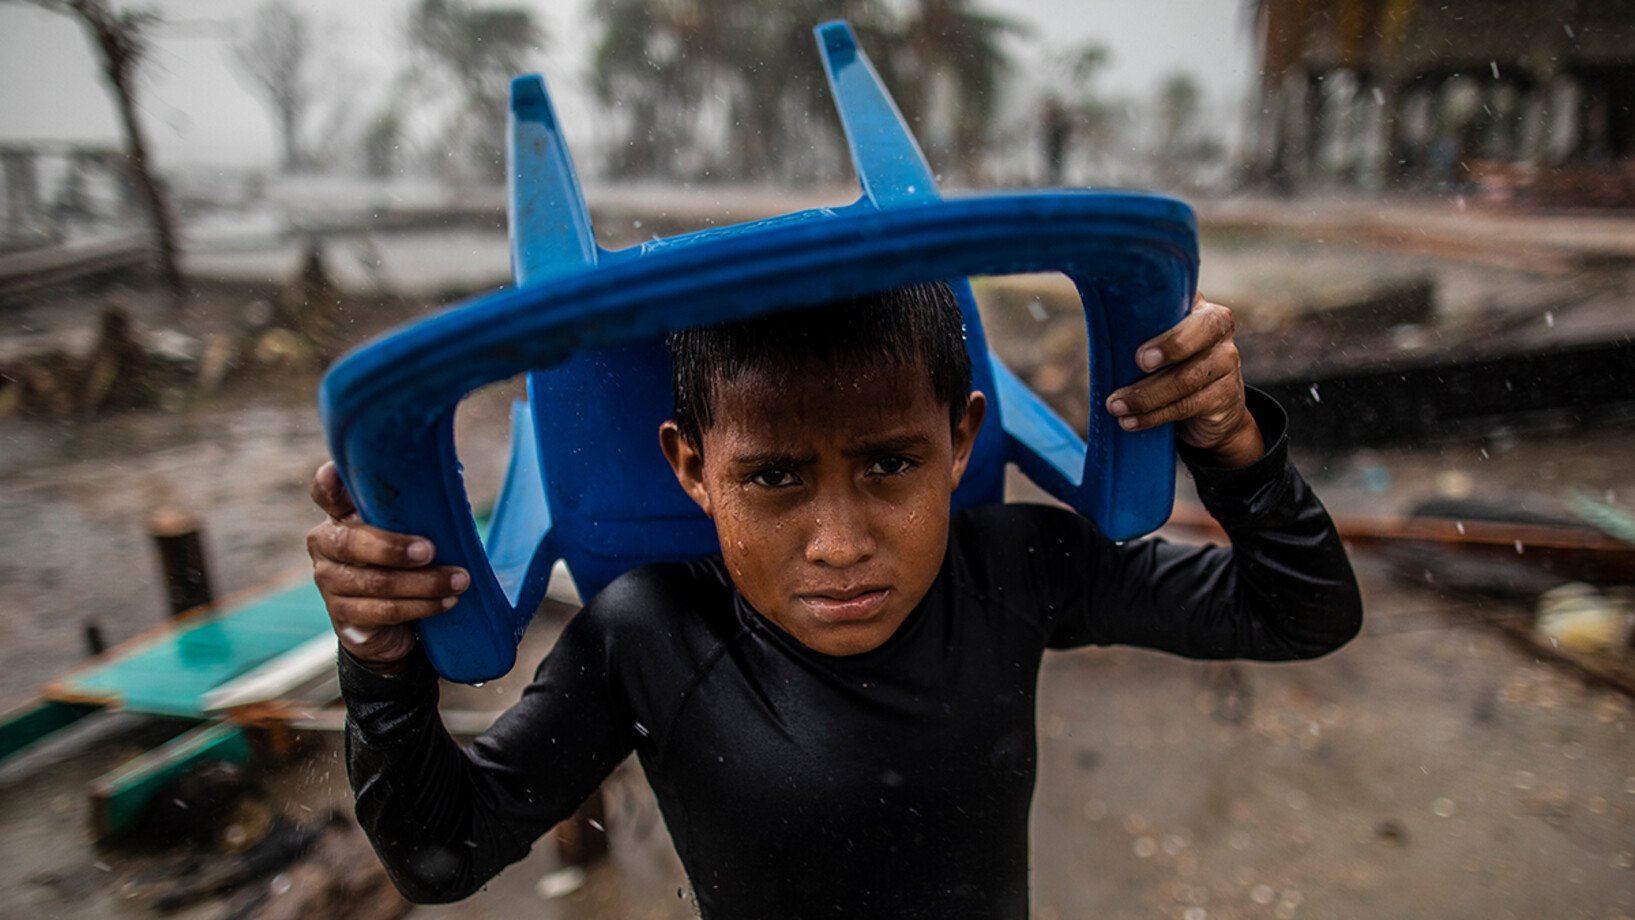 Am 17. November 2020 schützt sich in Bilwi, Nicaragua, ein Kind mit einem Plastikstuhl vor dem starken Regen und steht an der Stelle, an der einst sein Haus stand, nachdem es durch die starken Winde, Wellen und Regenfälle des Hurrikans Iota zerstört worden war.